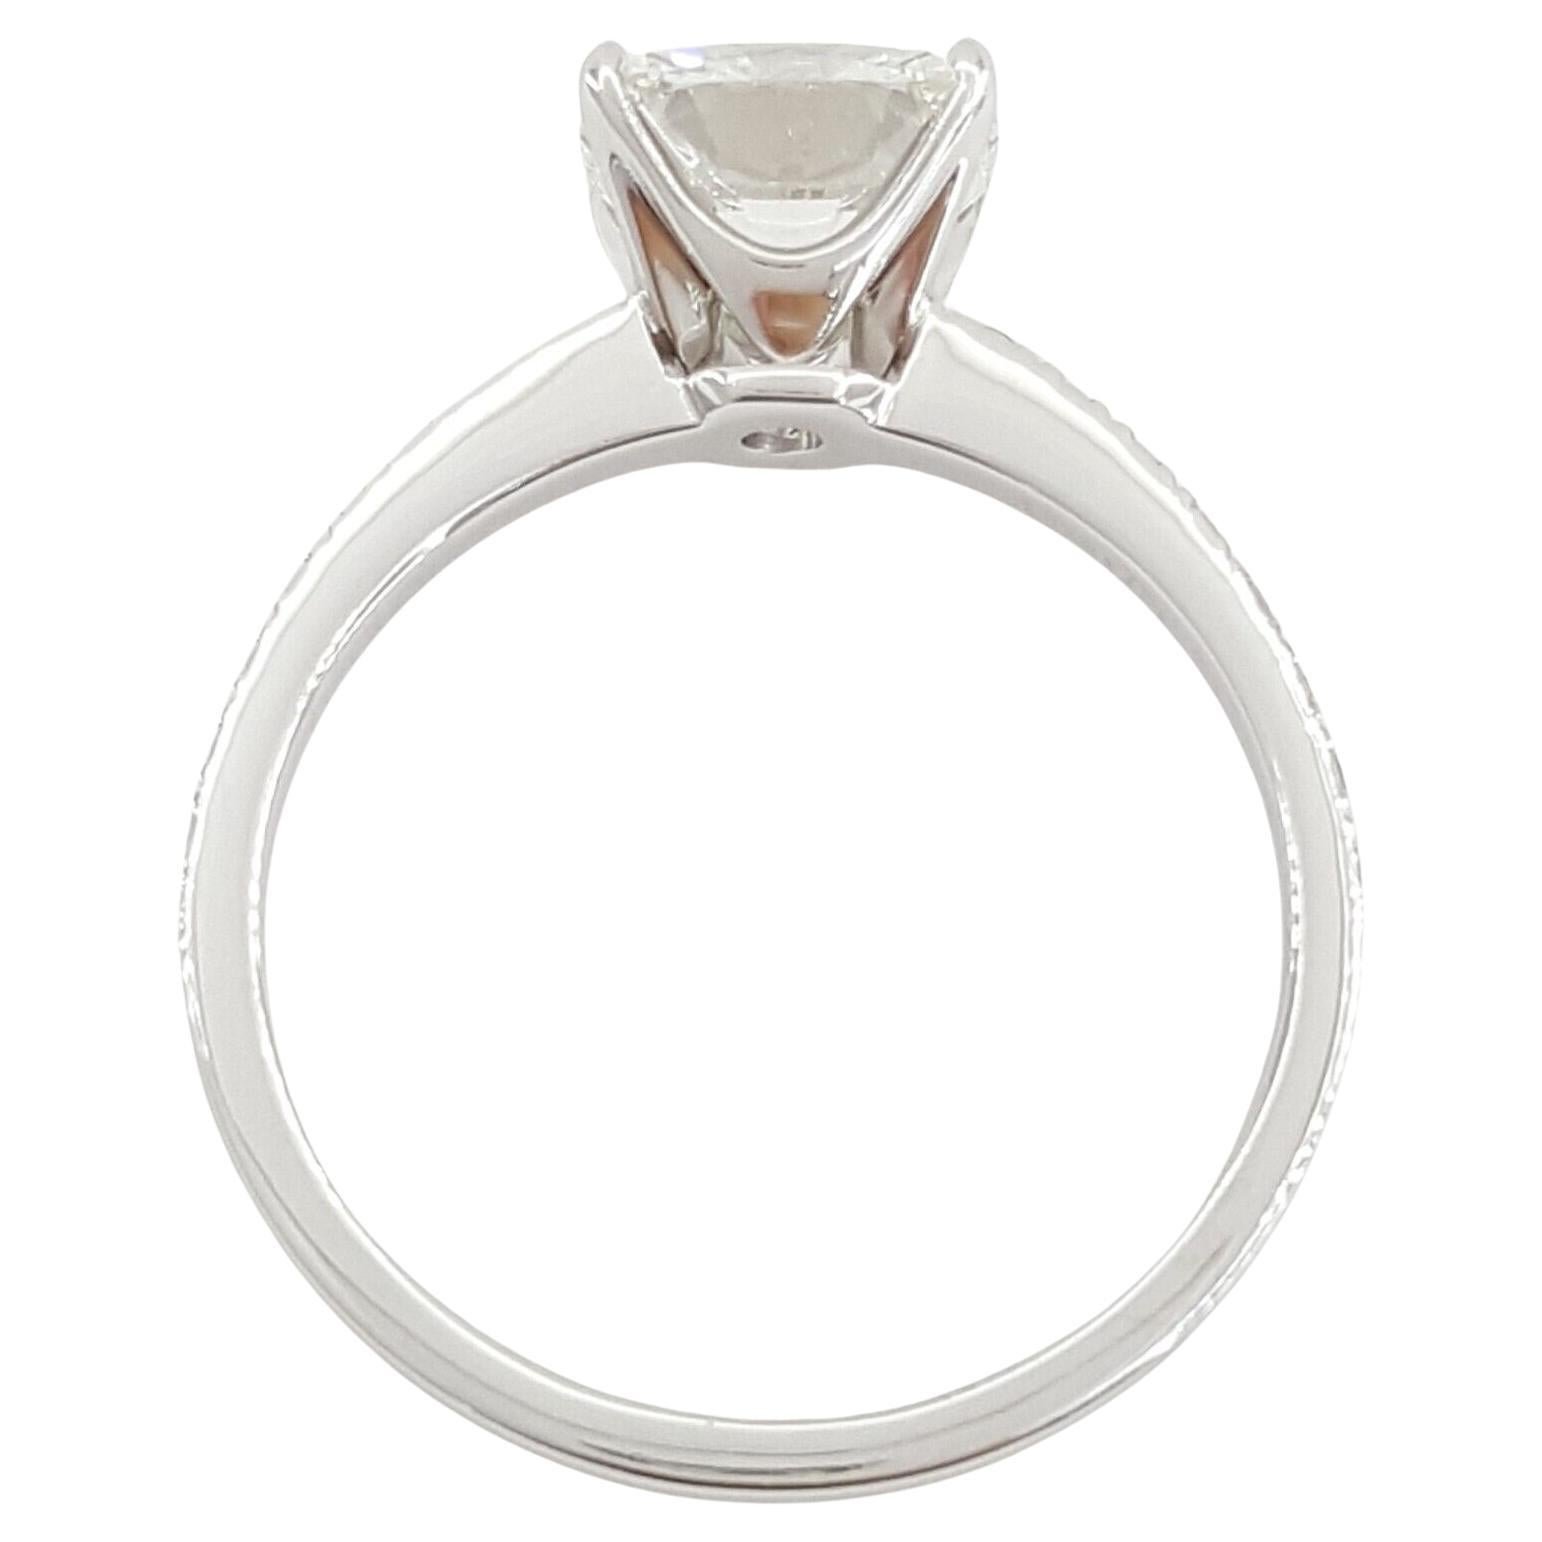 Tiffany & Co. Platinum Soleste® 1.4 ct Round Diamond Halo Engagement Ring and Wedding Band Set.

Les deux bagues pèsent 6,9 grammes, taille 4,5, la pierre centrale est un diamant naturel rond de taille brillant pesant 1,00 ct, de couleur G, de